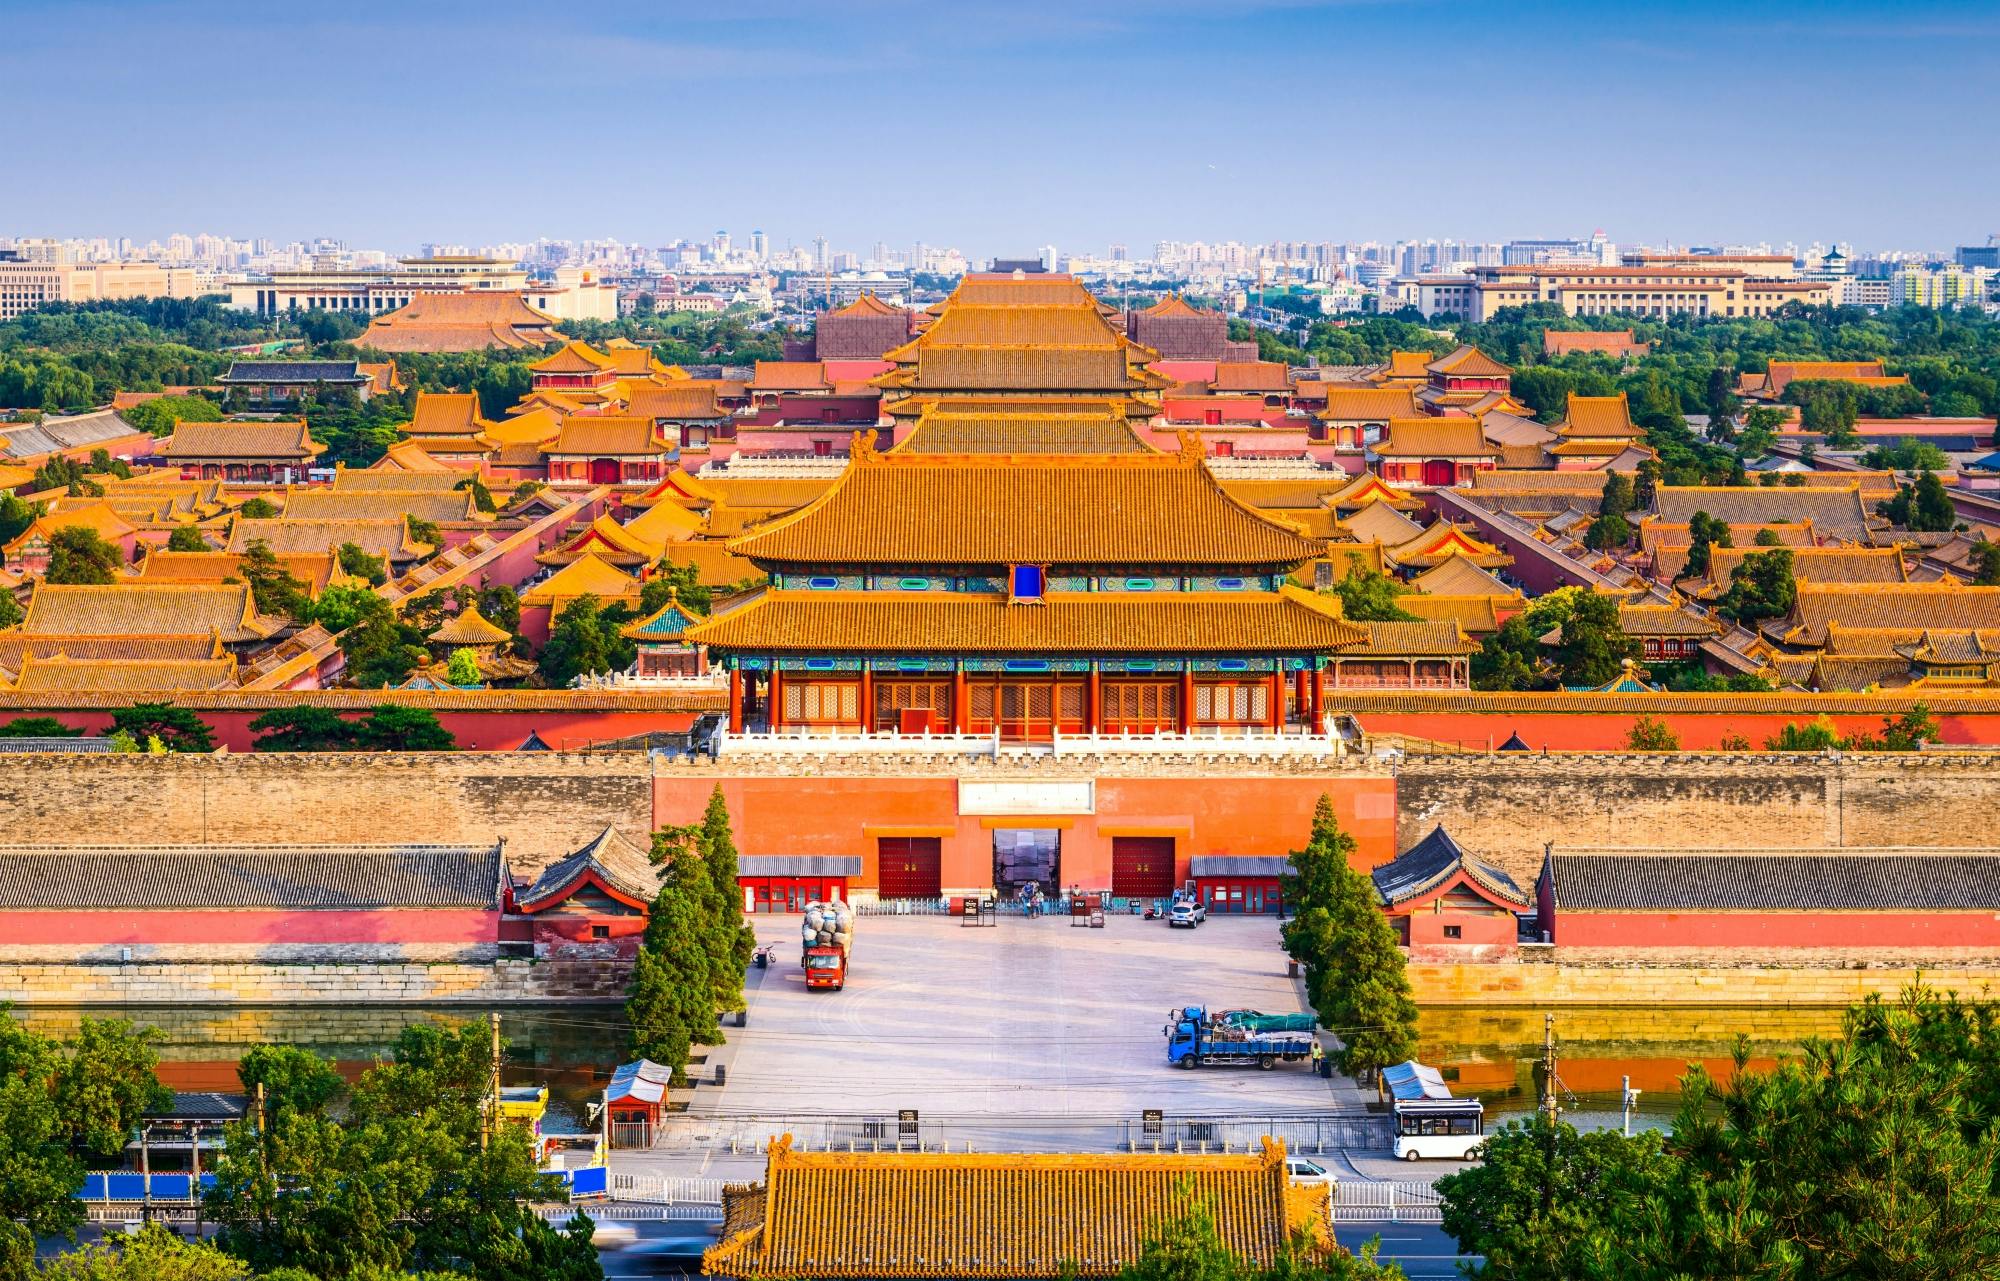 Excursão a Pequim com refeição imperial e barco fretado no Palácio de Verão